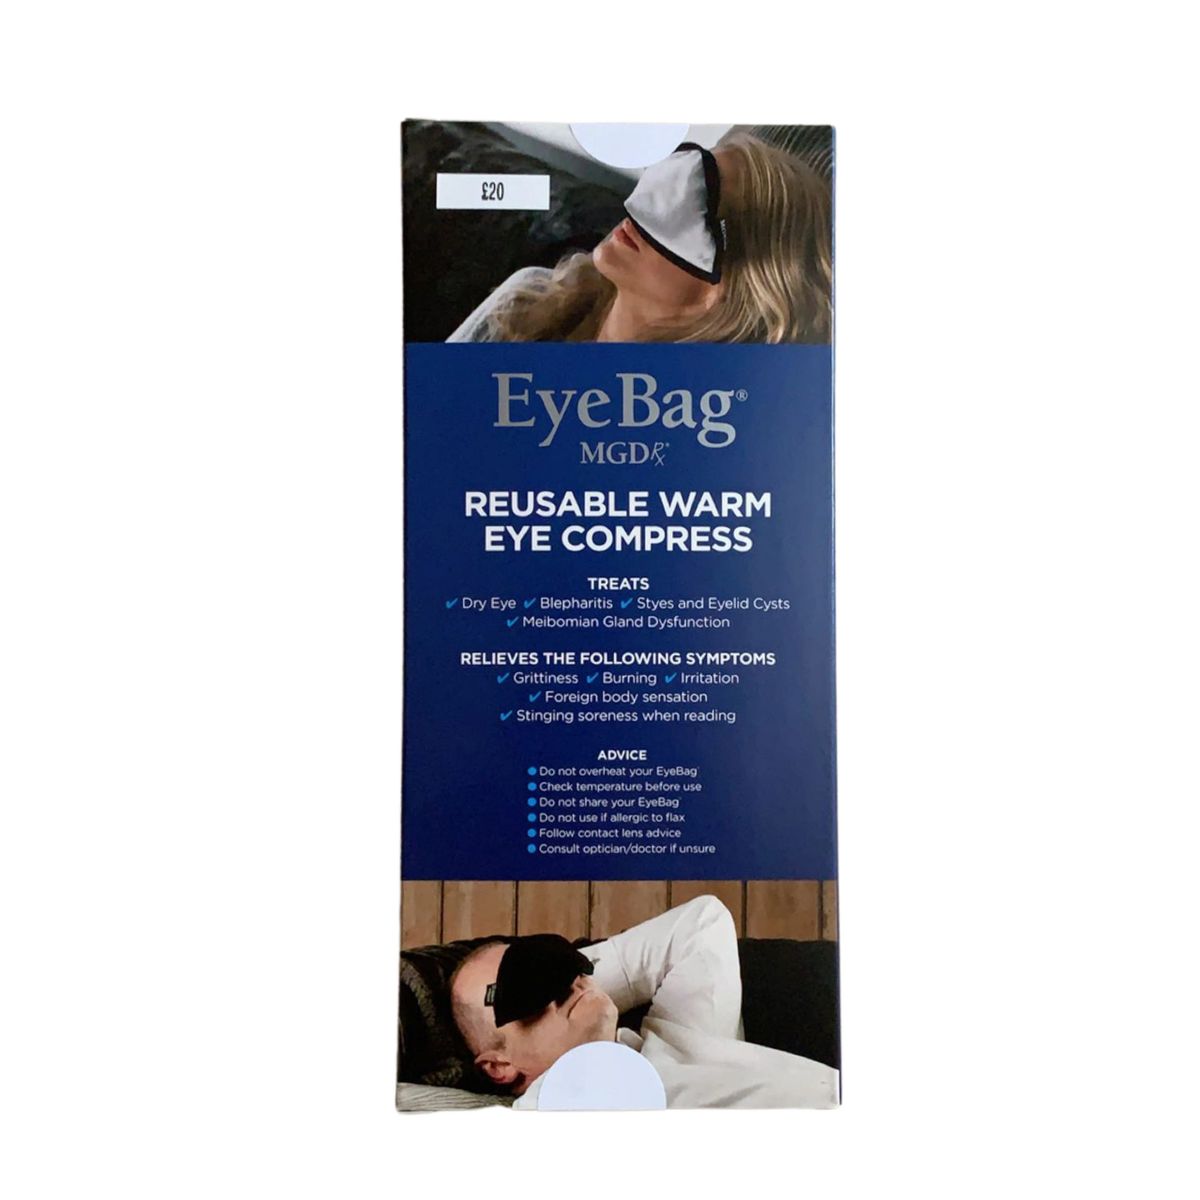 MGDrx Eye Bag